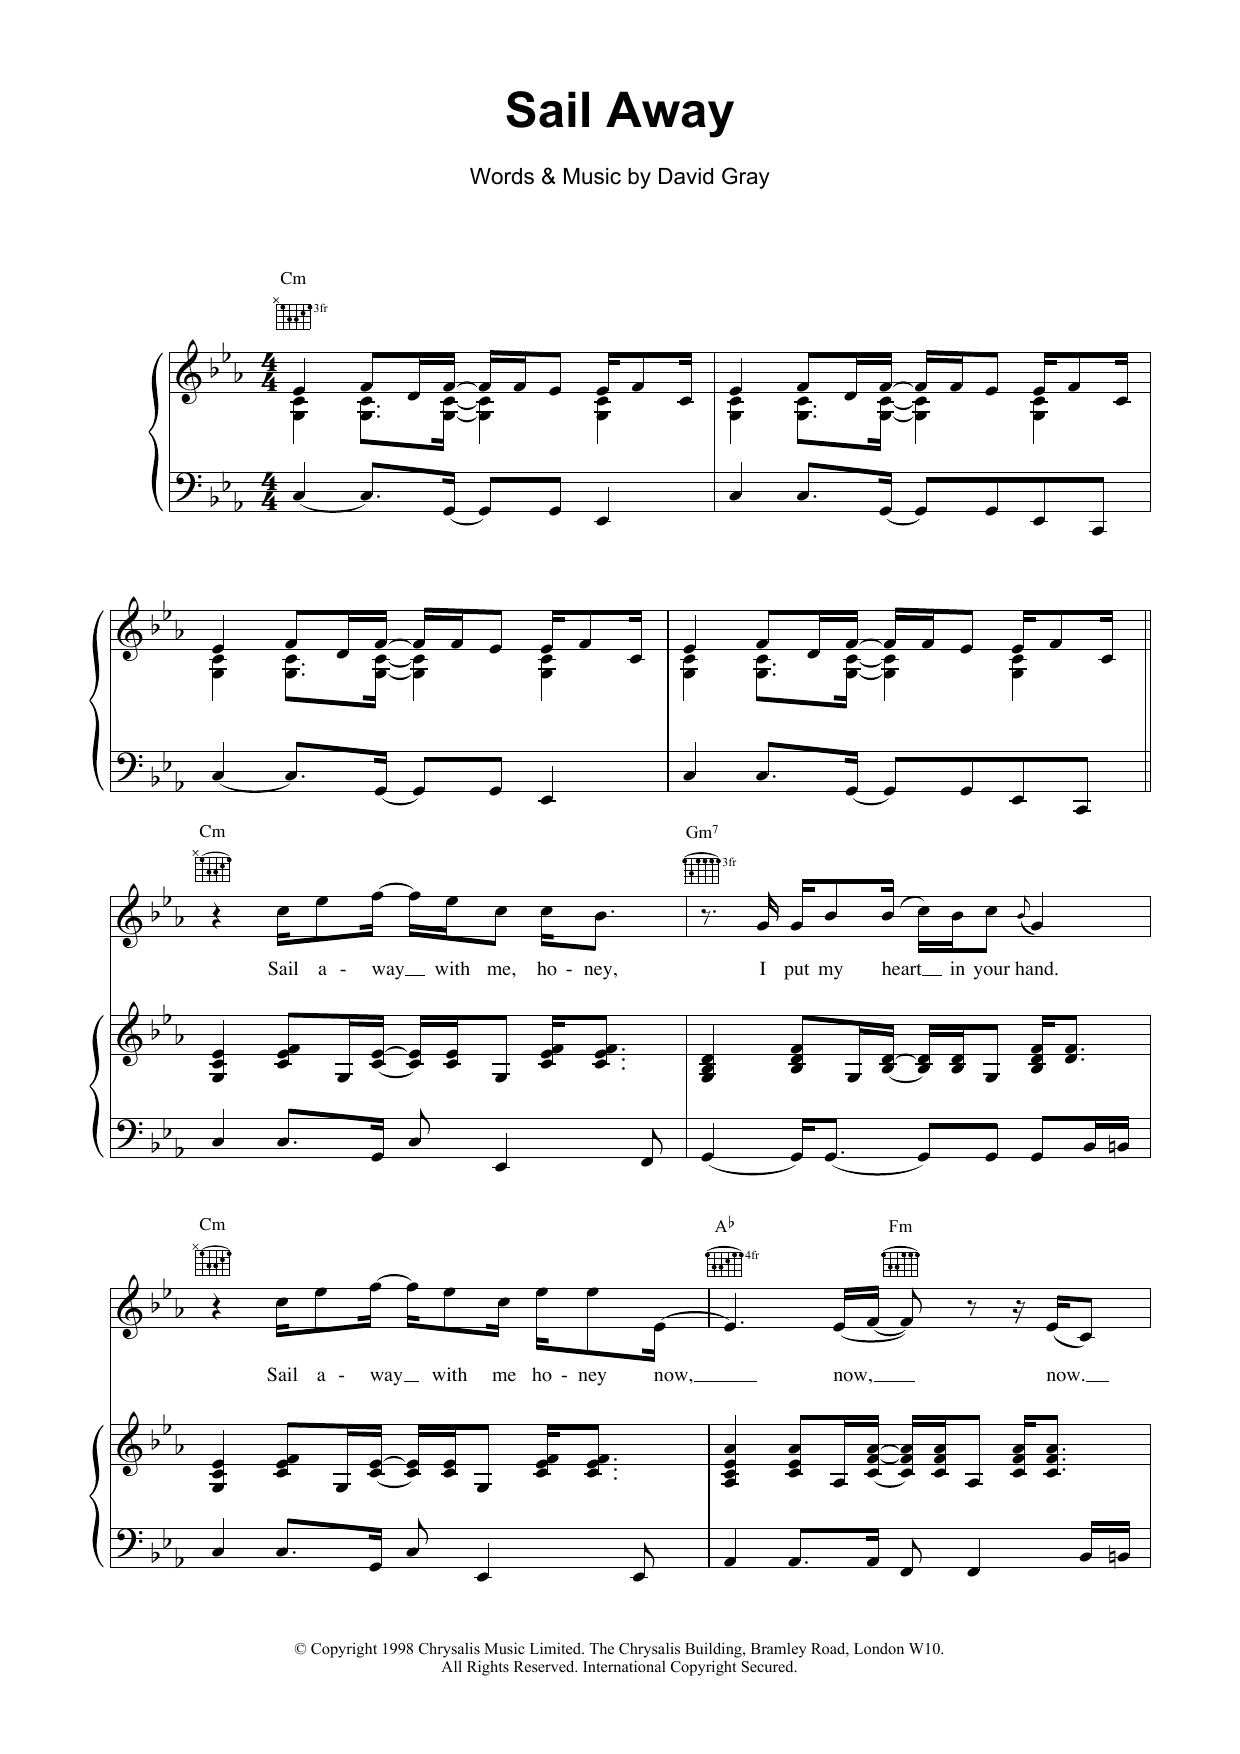 David Gray Sail Away Sheet Music Notes & Chords for Violin - Download or Print PDF